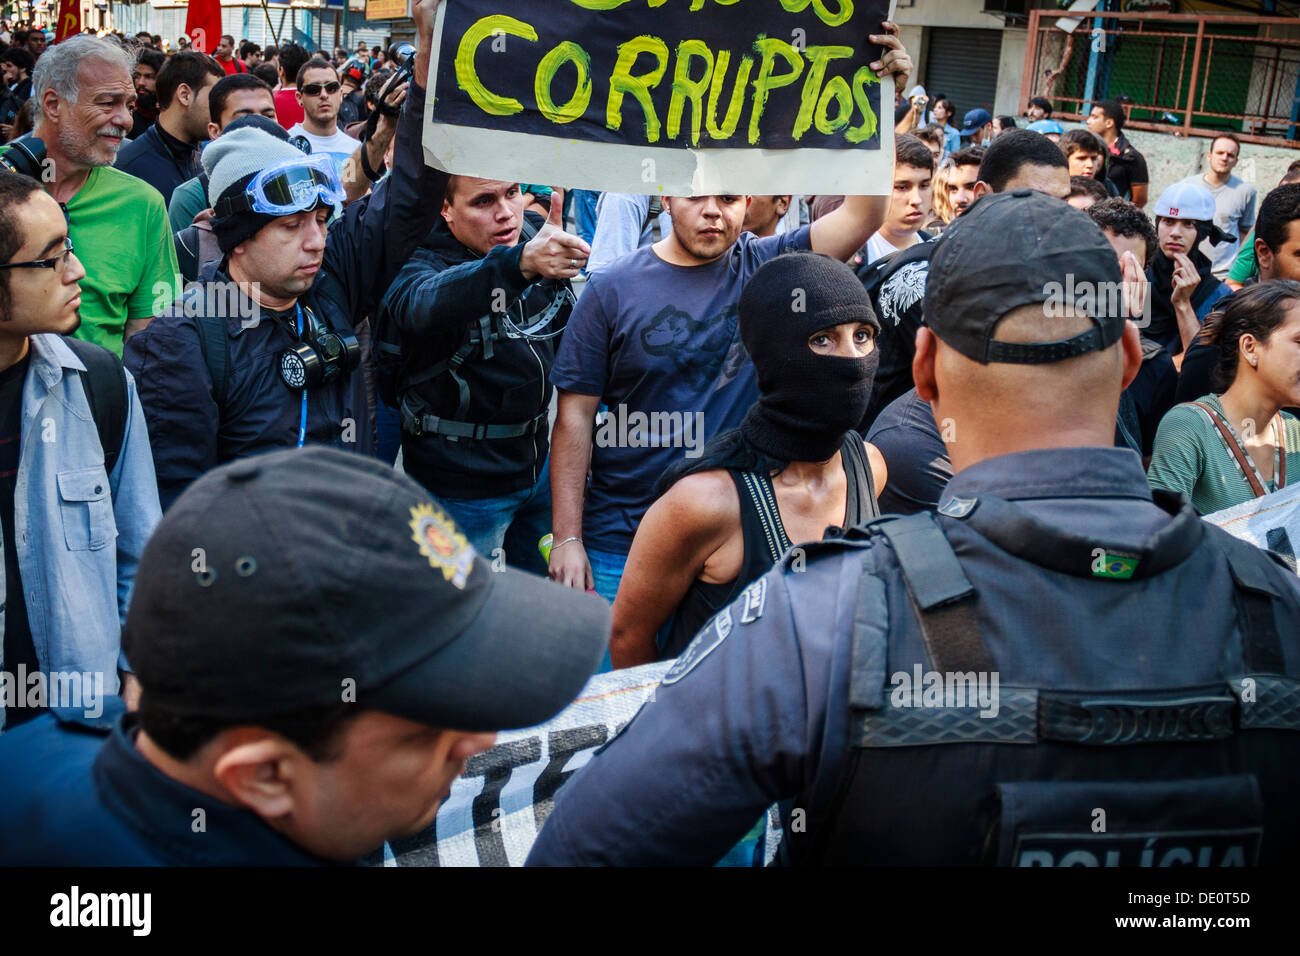 Au cours de protestation le 7 septembre - l'indépendance du Brésil - se termine dans la violence et la brutalité policière. Un homme âgé est touché et tombe Banque D'Images